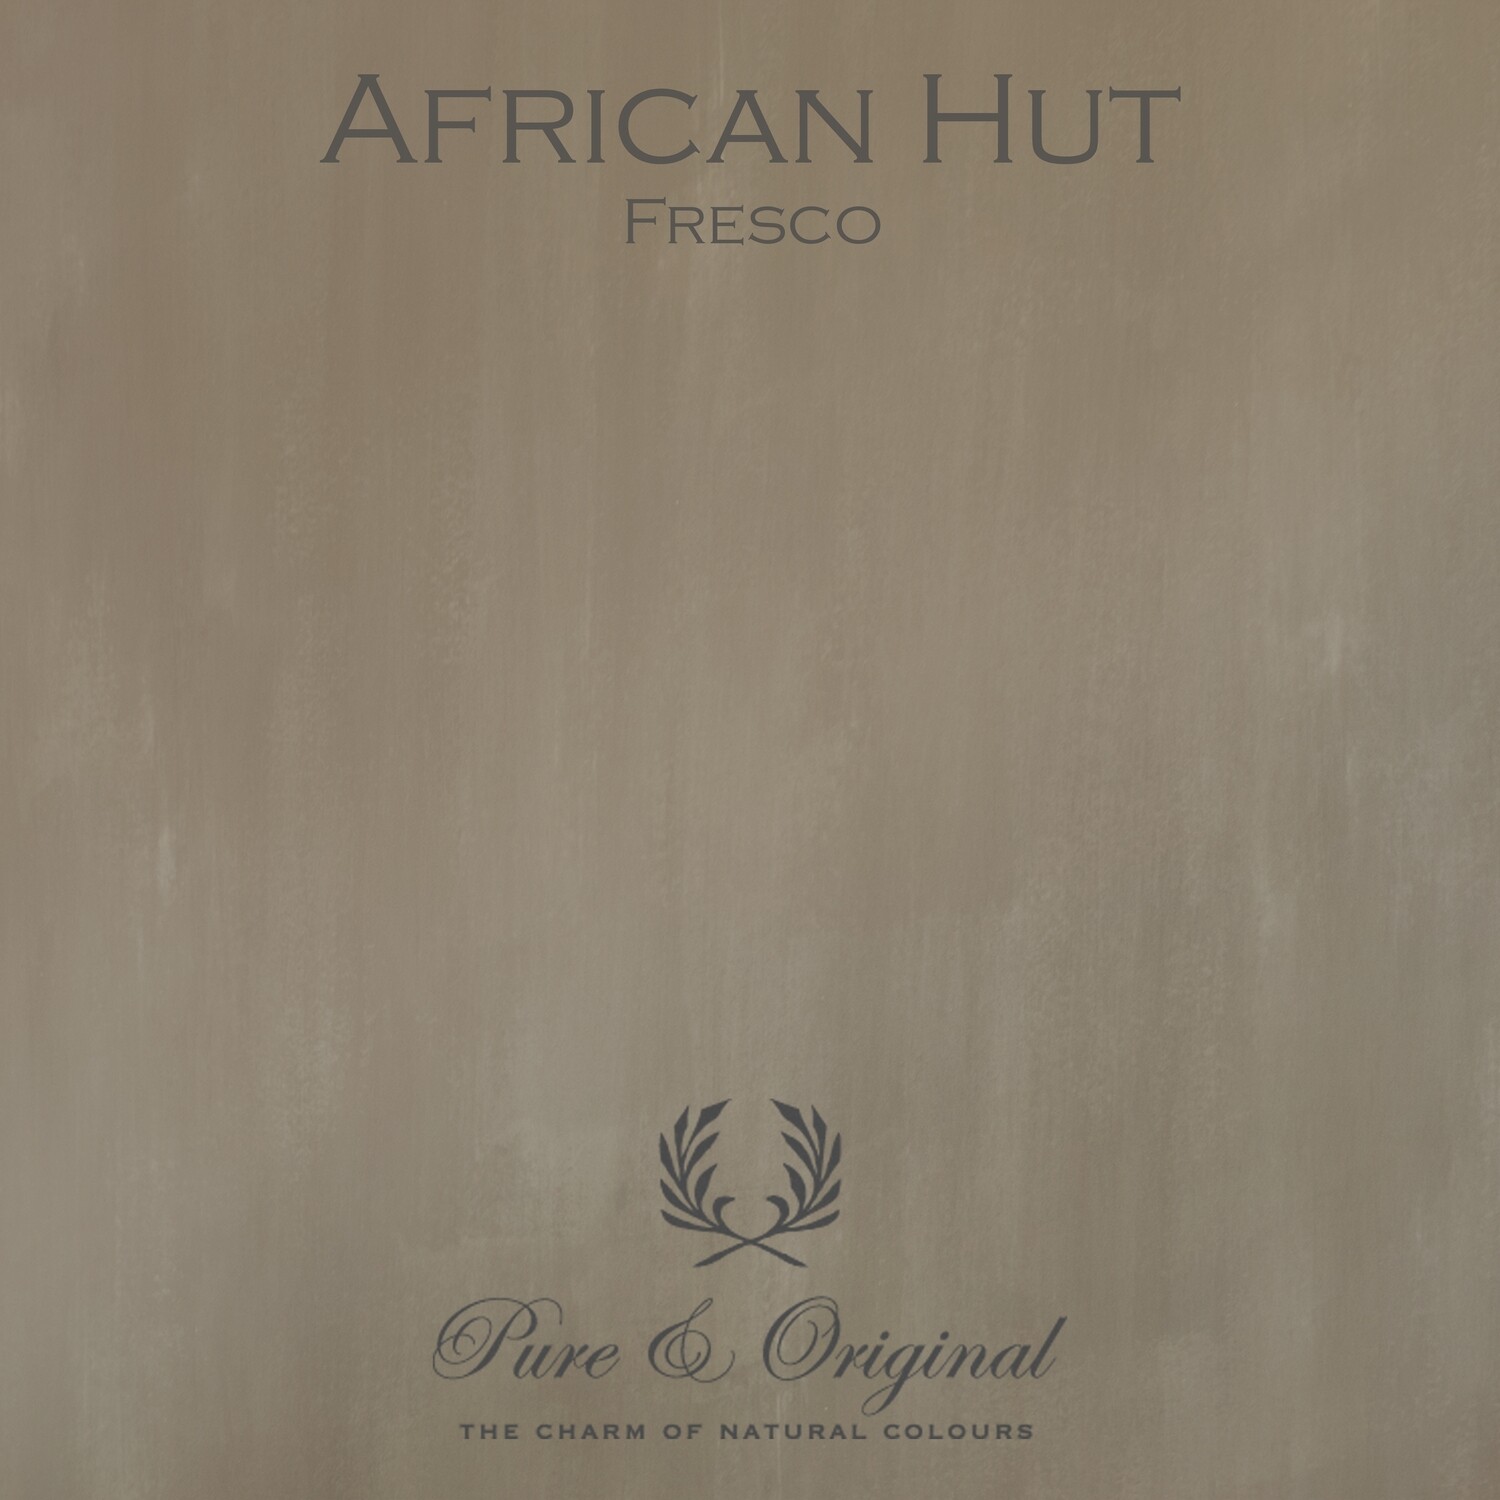 African Hut Fresco